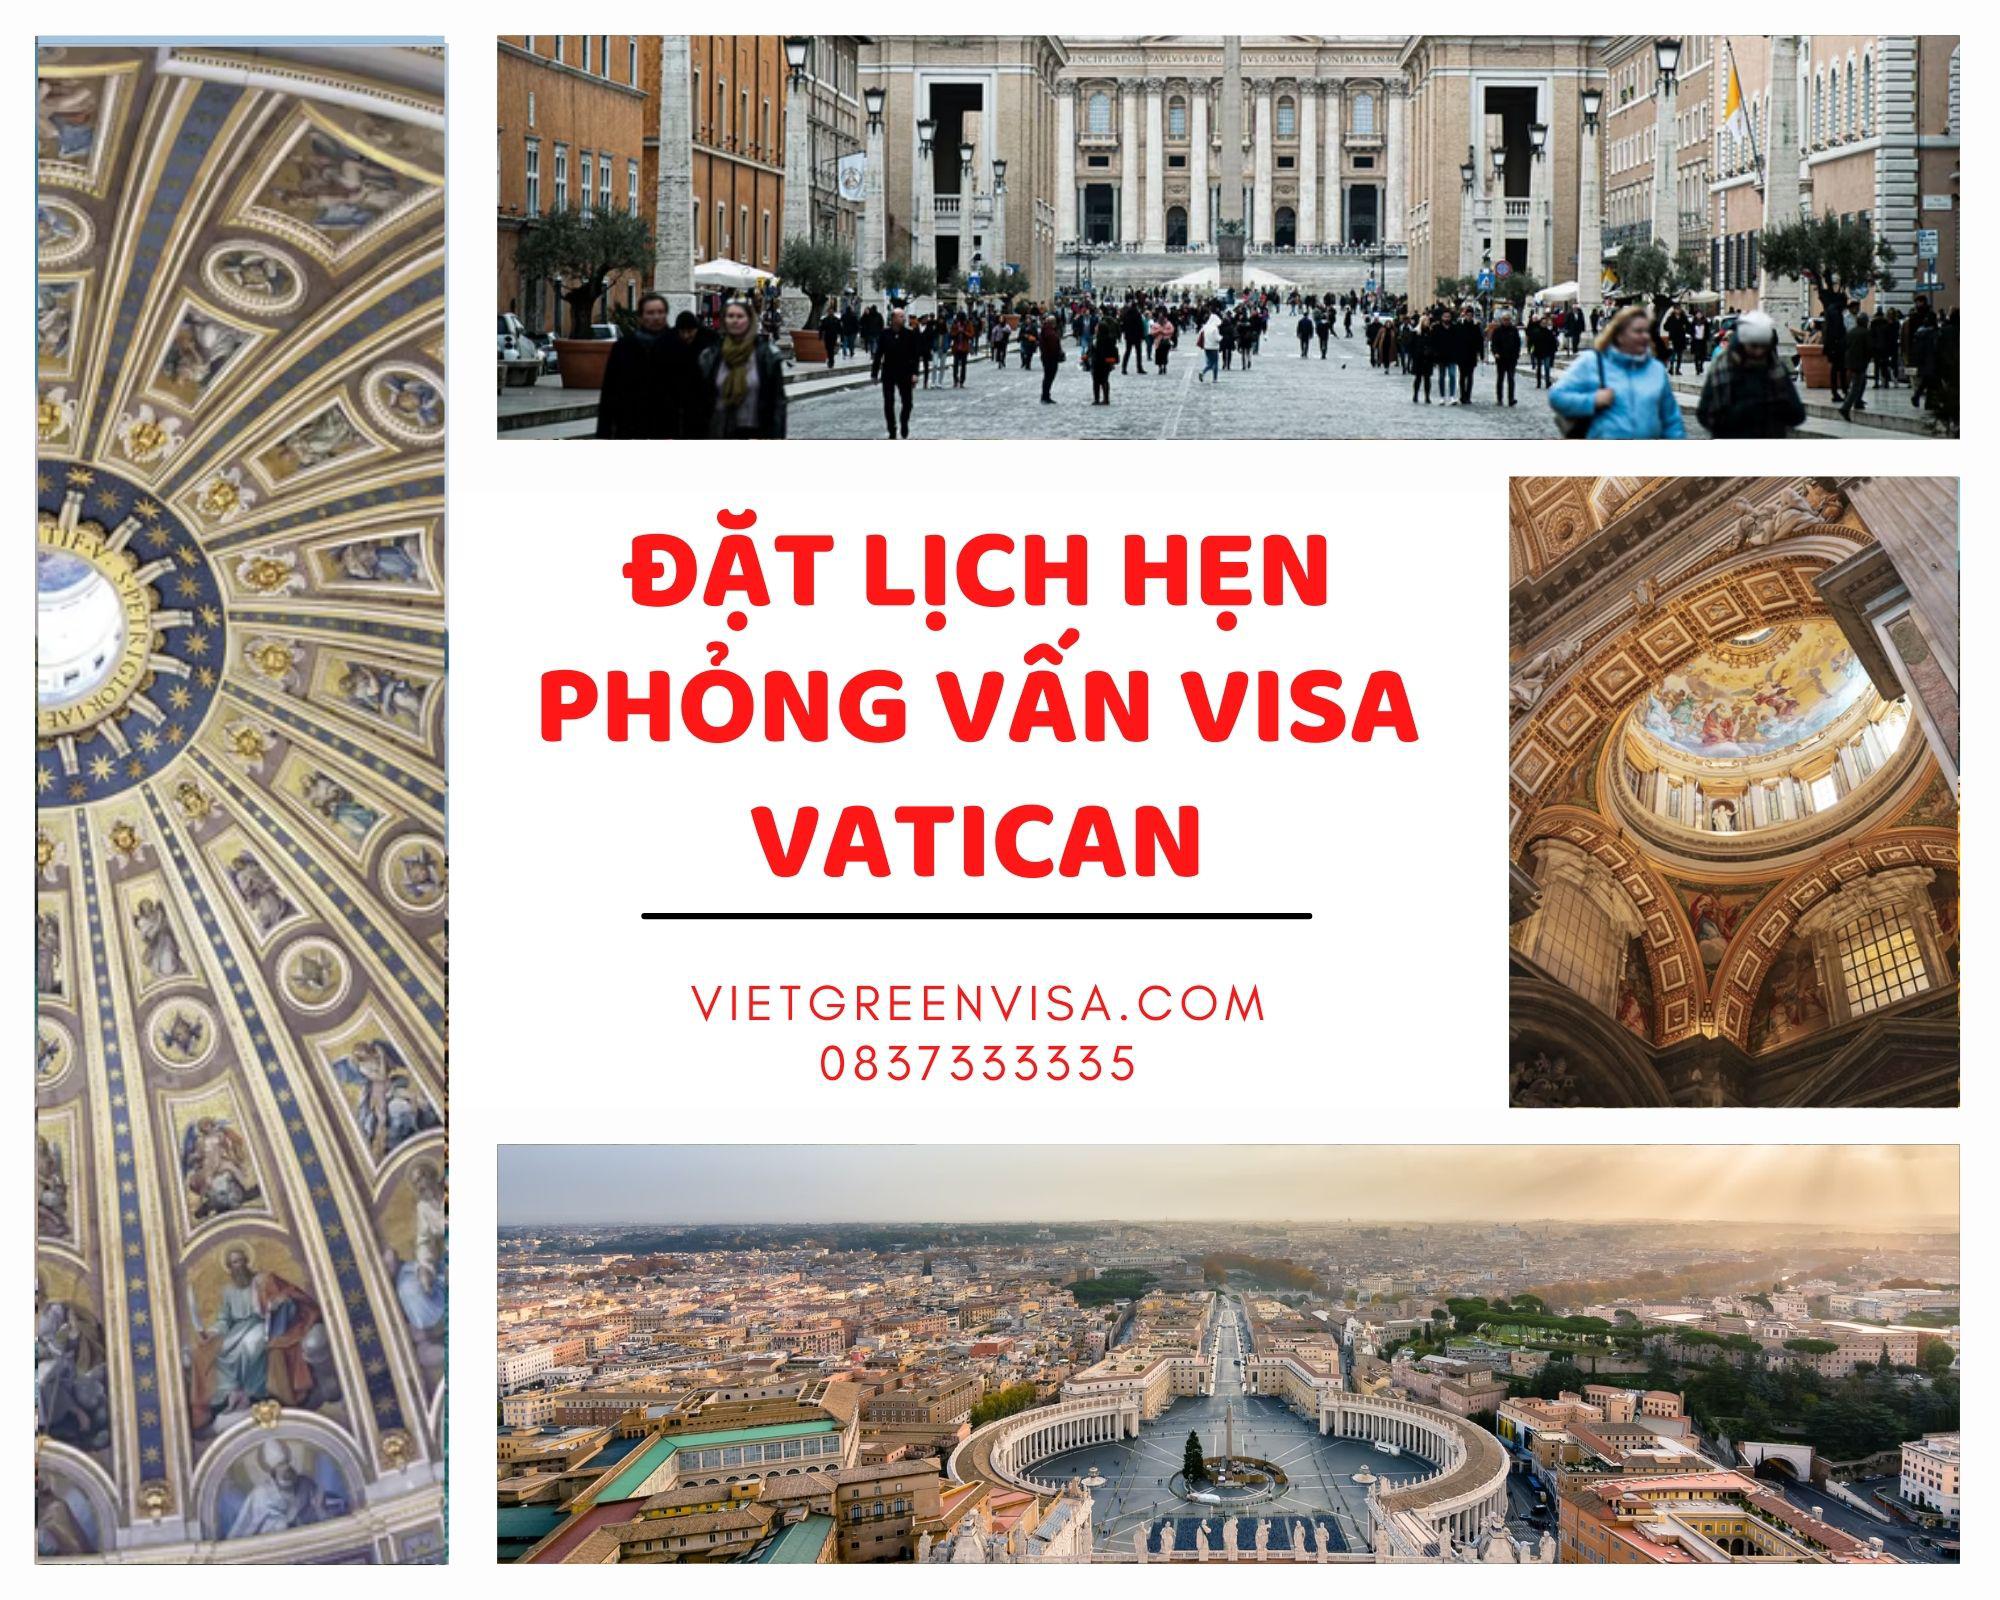 Hỗ trợ đặt lịch hẹn phỏng vấn visa Vatican nhanh chóng